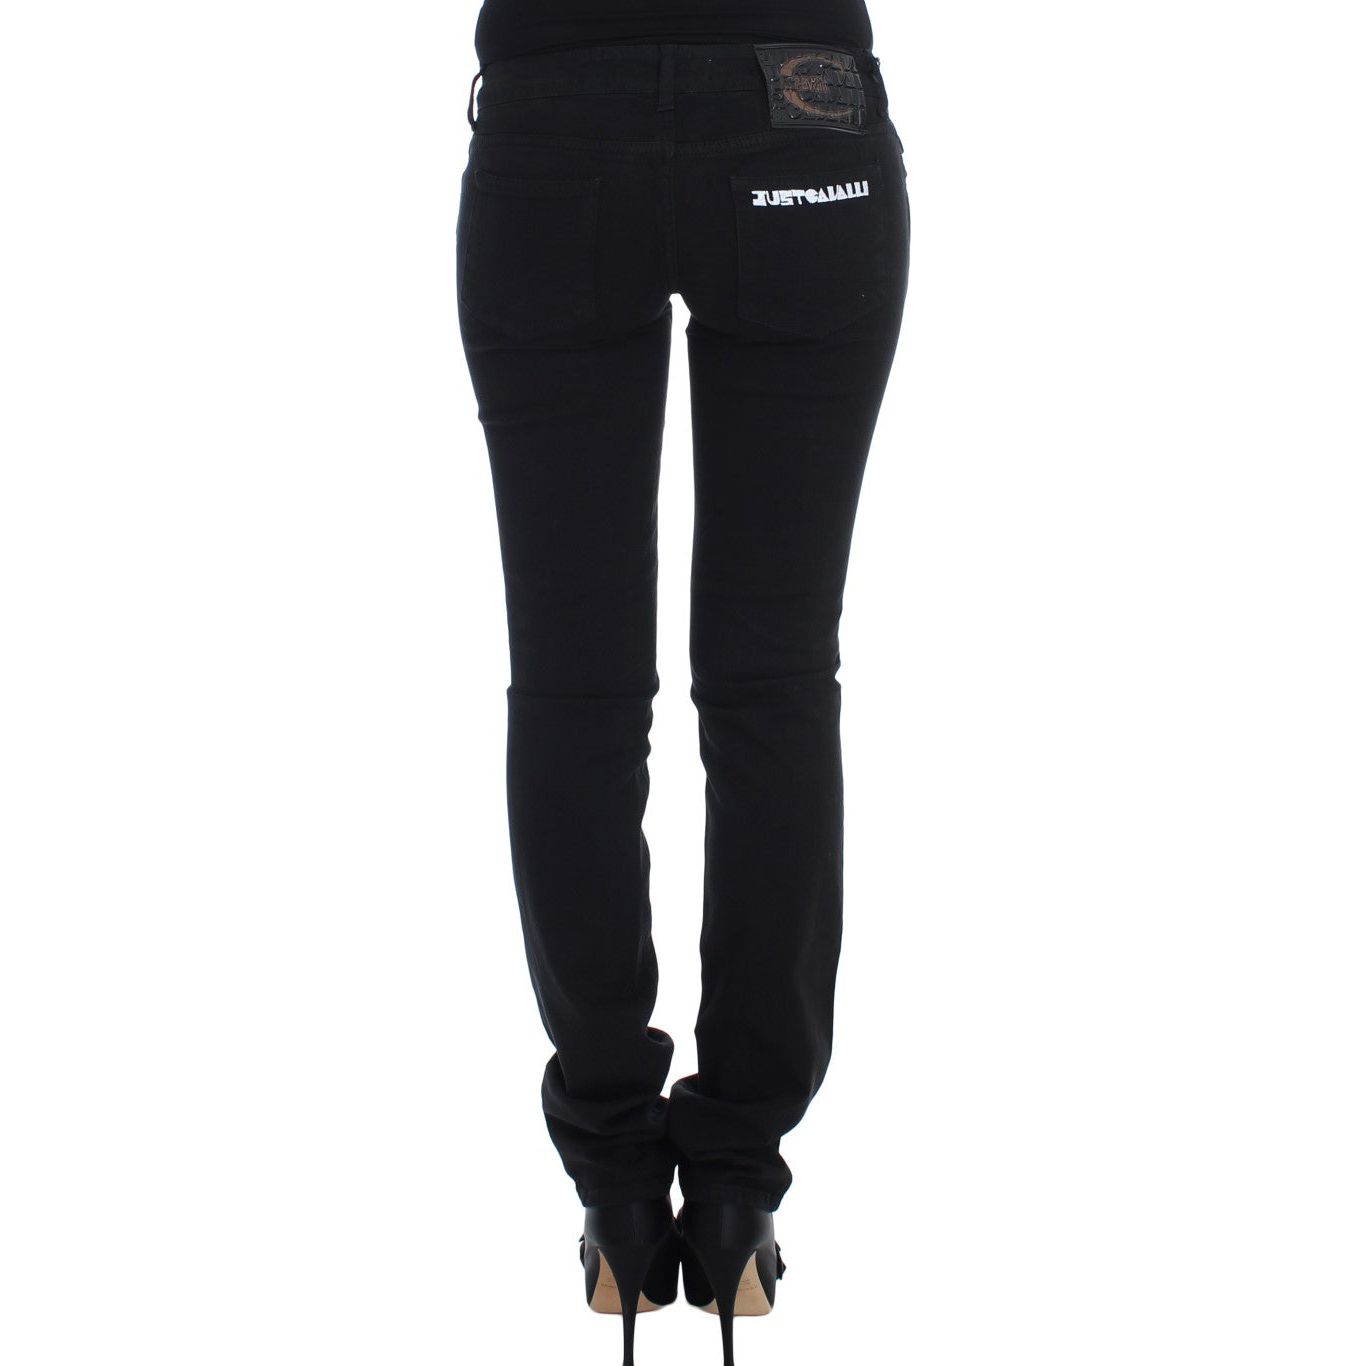 Cavalli Chic Slim Skinny Black Jeans black-cotton-stretch-slim-skinny-fit-jeans Jeans & Pants 60937-black-cotton-stretch-slim-skinny-fit-jeans-2.jpg